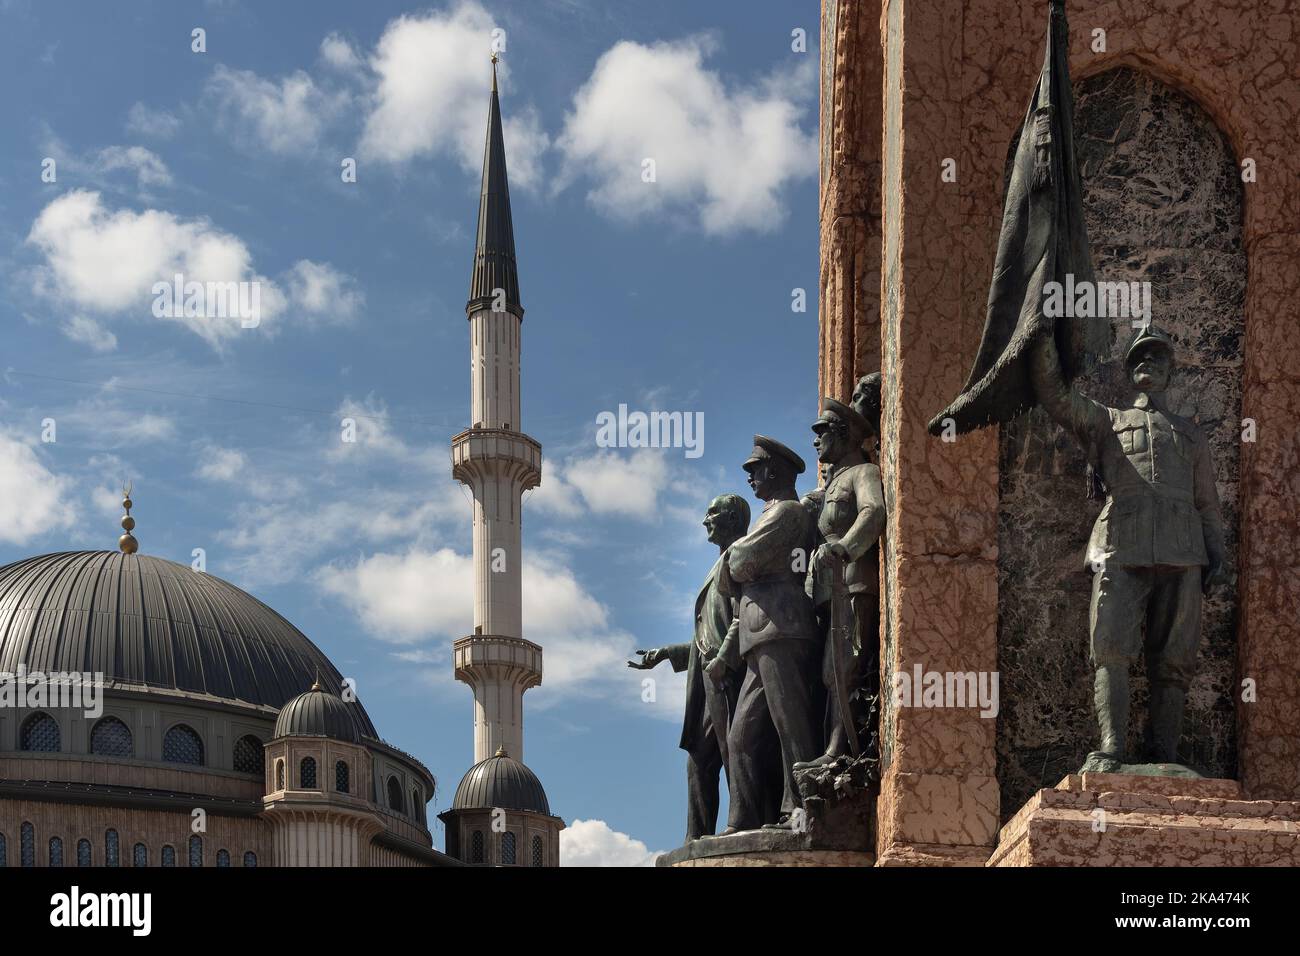 Nahaufnahme des republikdenkmals am Taksim-Platz und der neu errichteten Moschee in Istanbul. Es ist ein sonniger Sommertag. Stockfoto